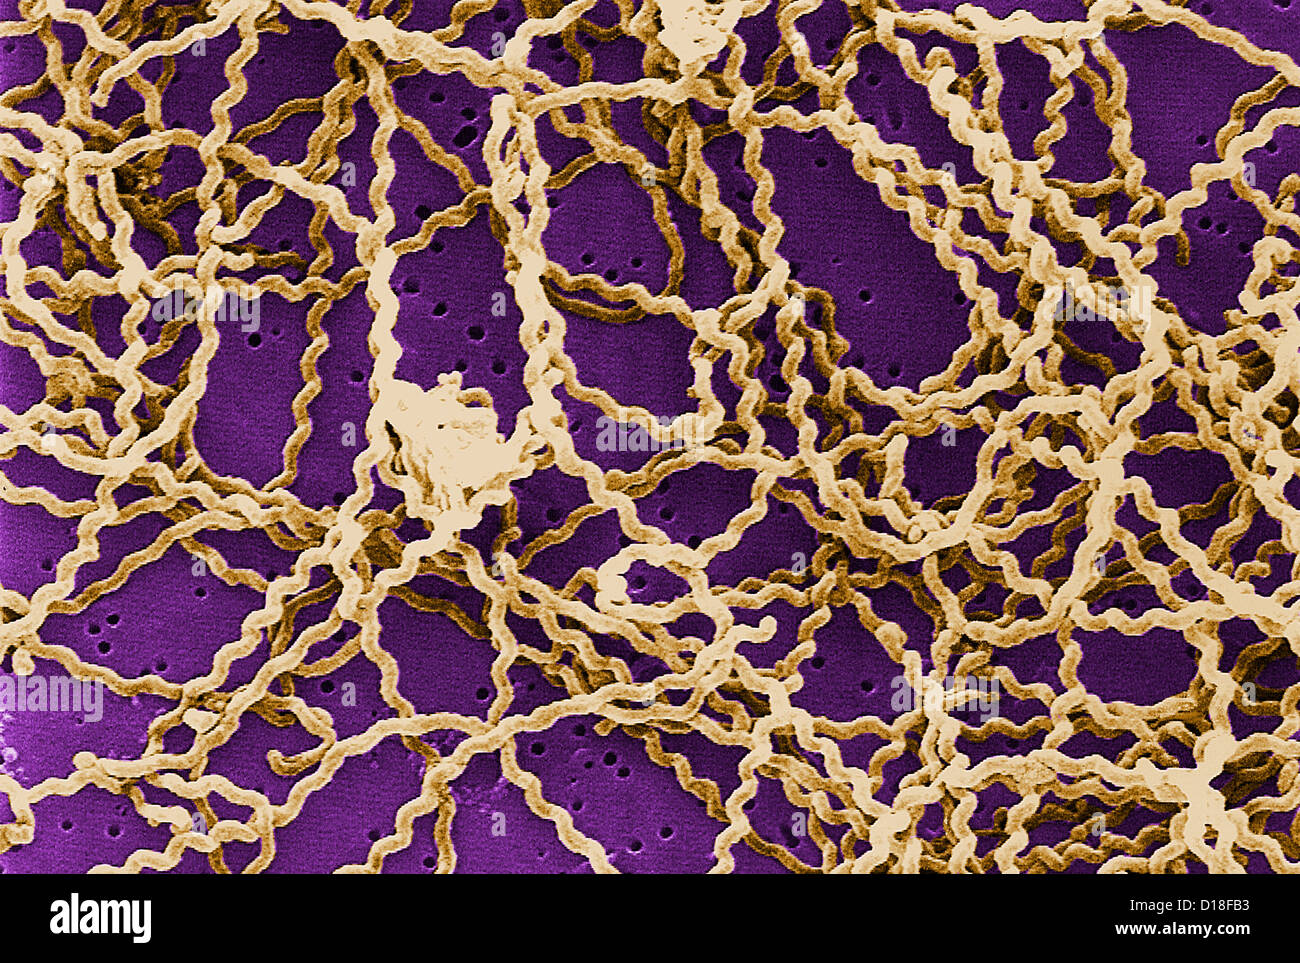 Micrografia al microscopio elettronico a scansione, Leptospira batteri Foto Stock